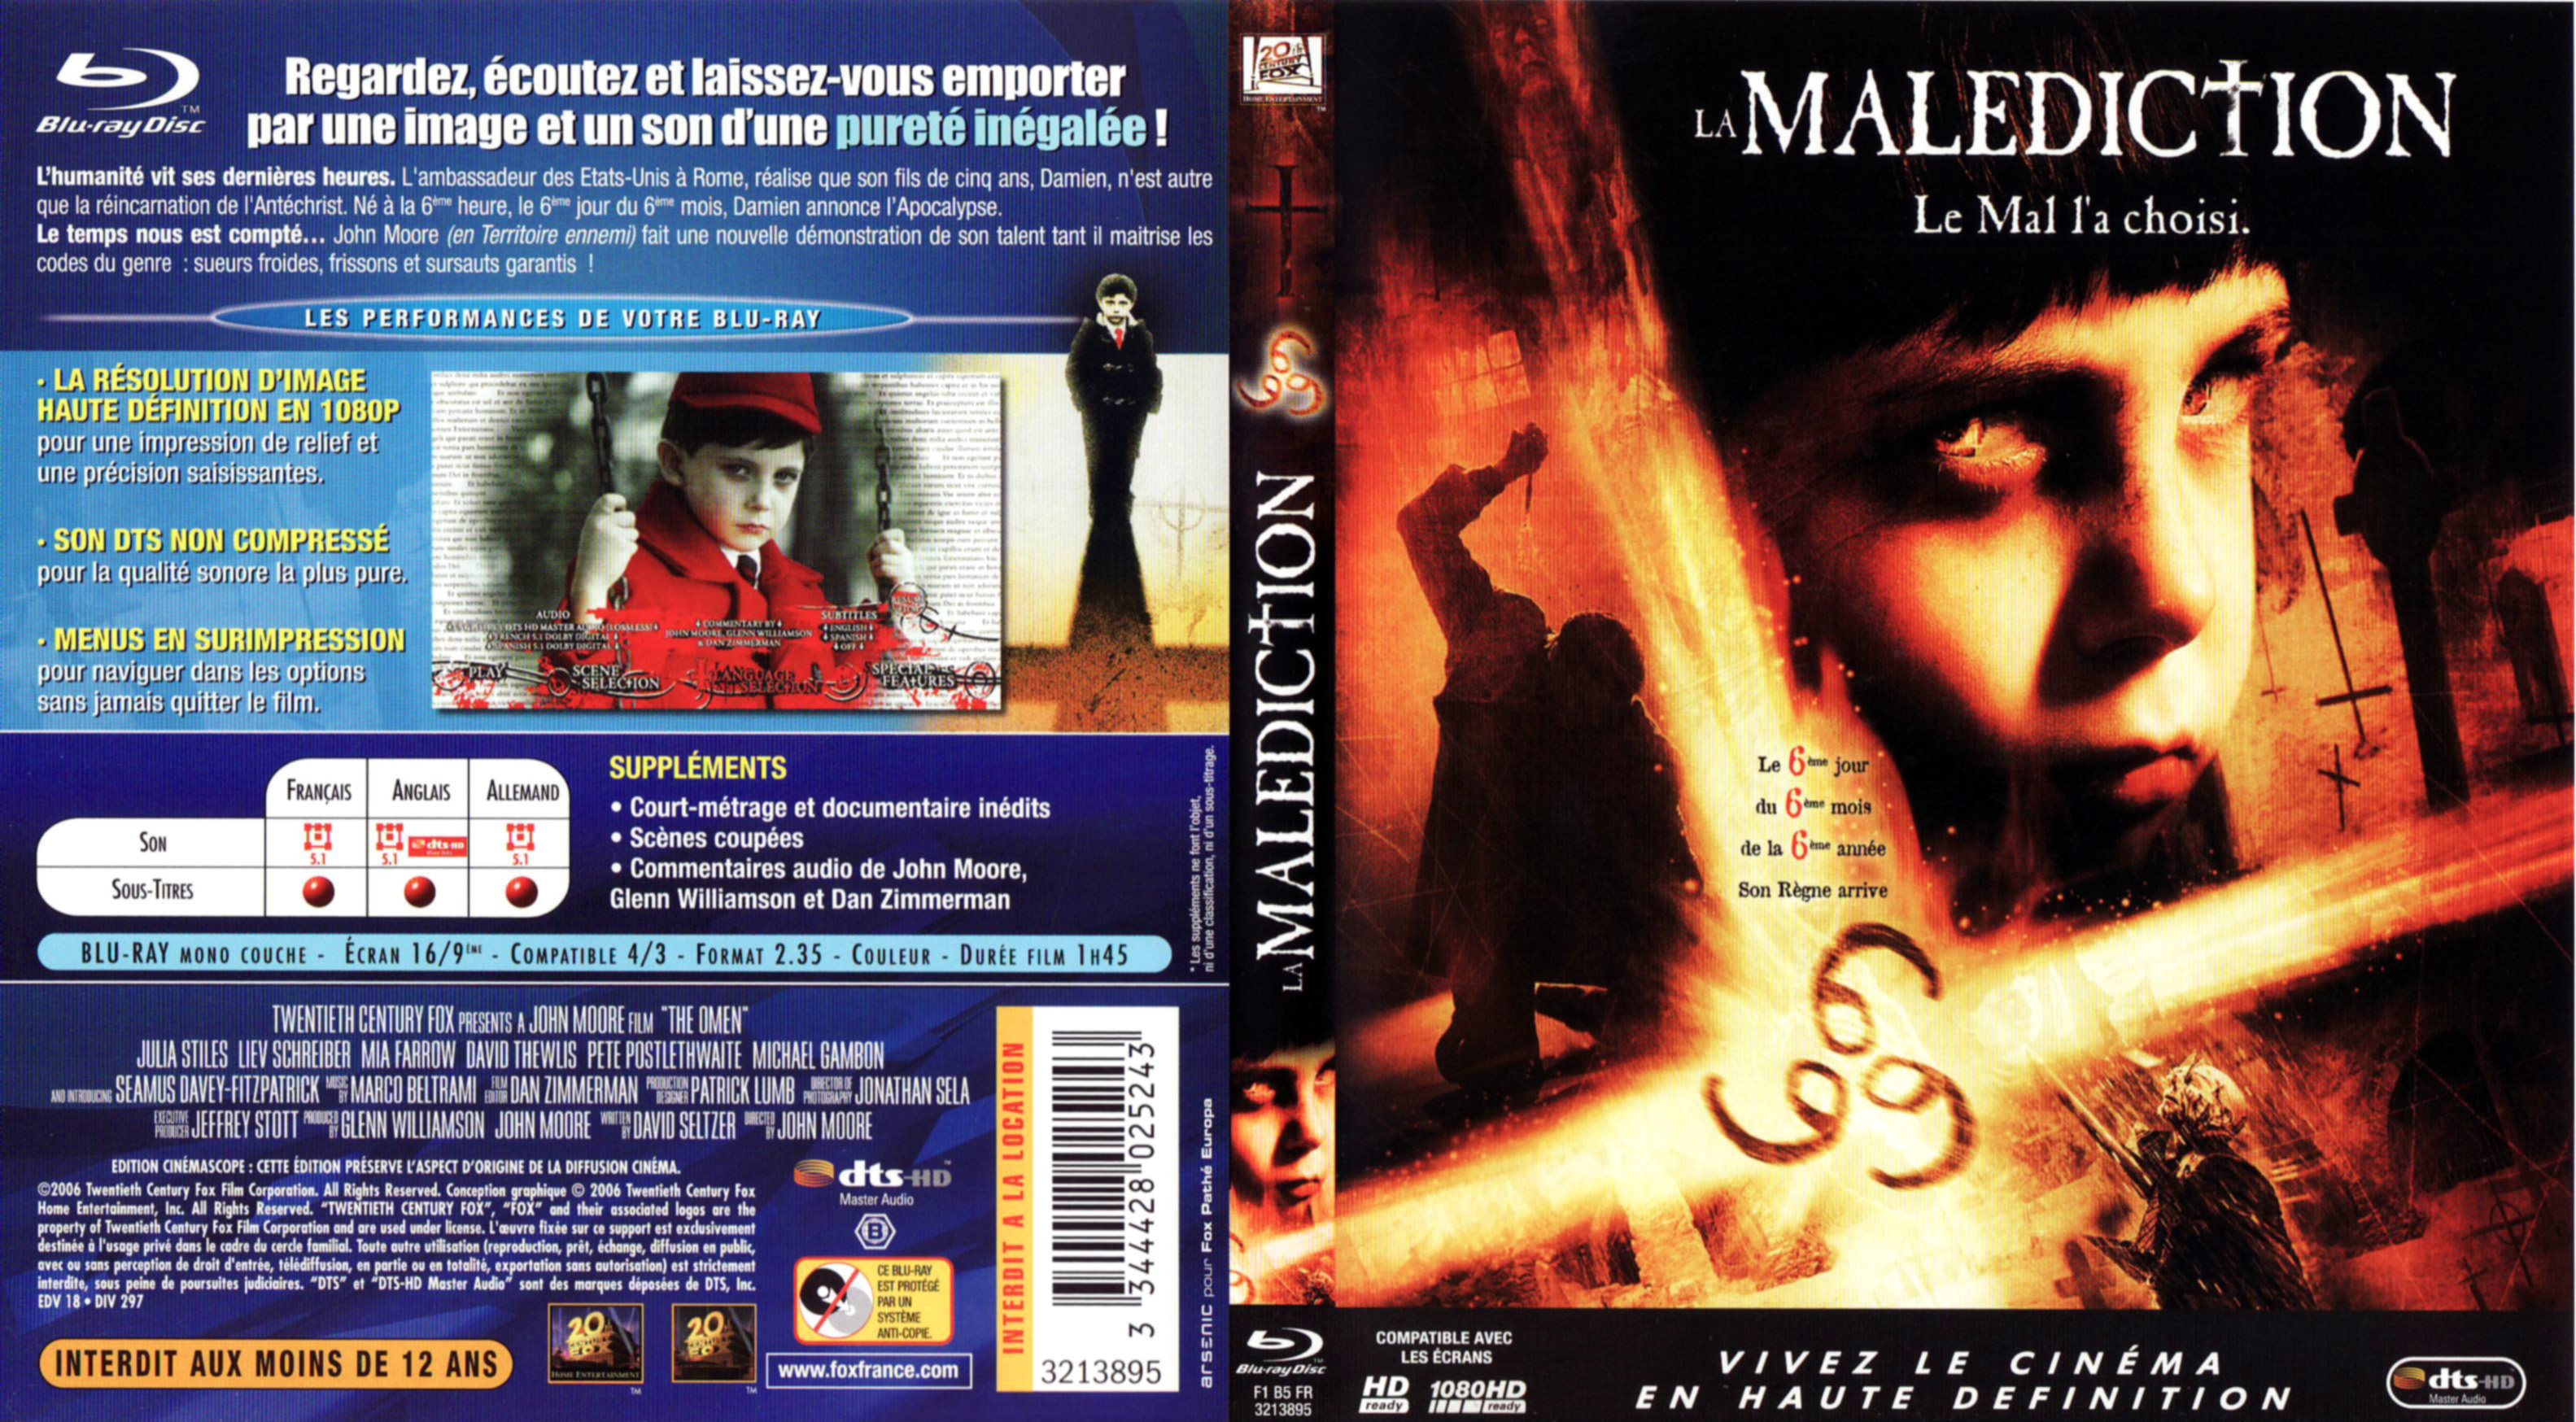 Jaquette DVD La maldiction (2006) (BLU-RAY)